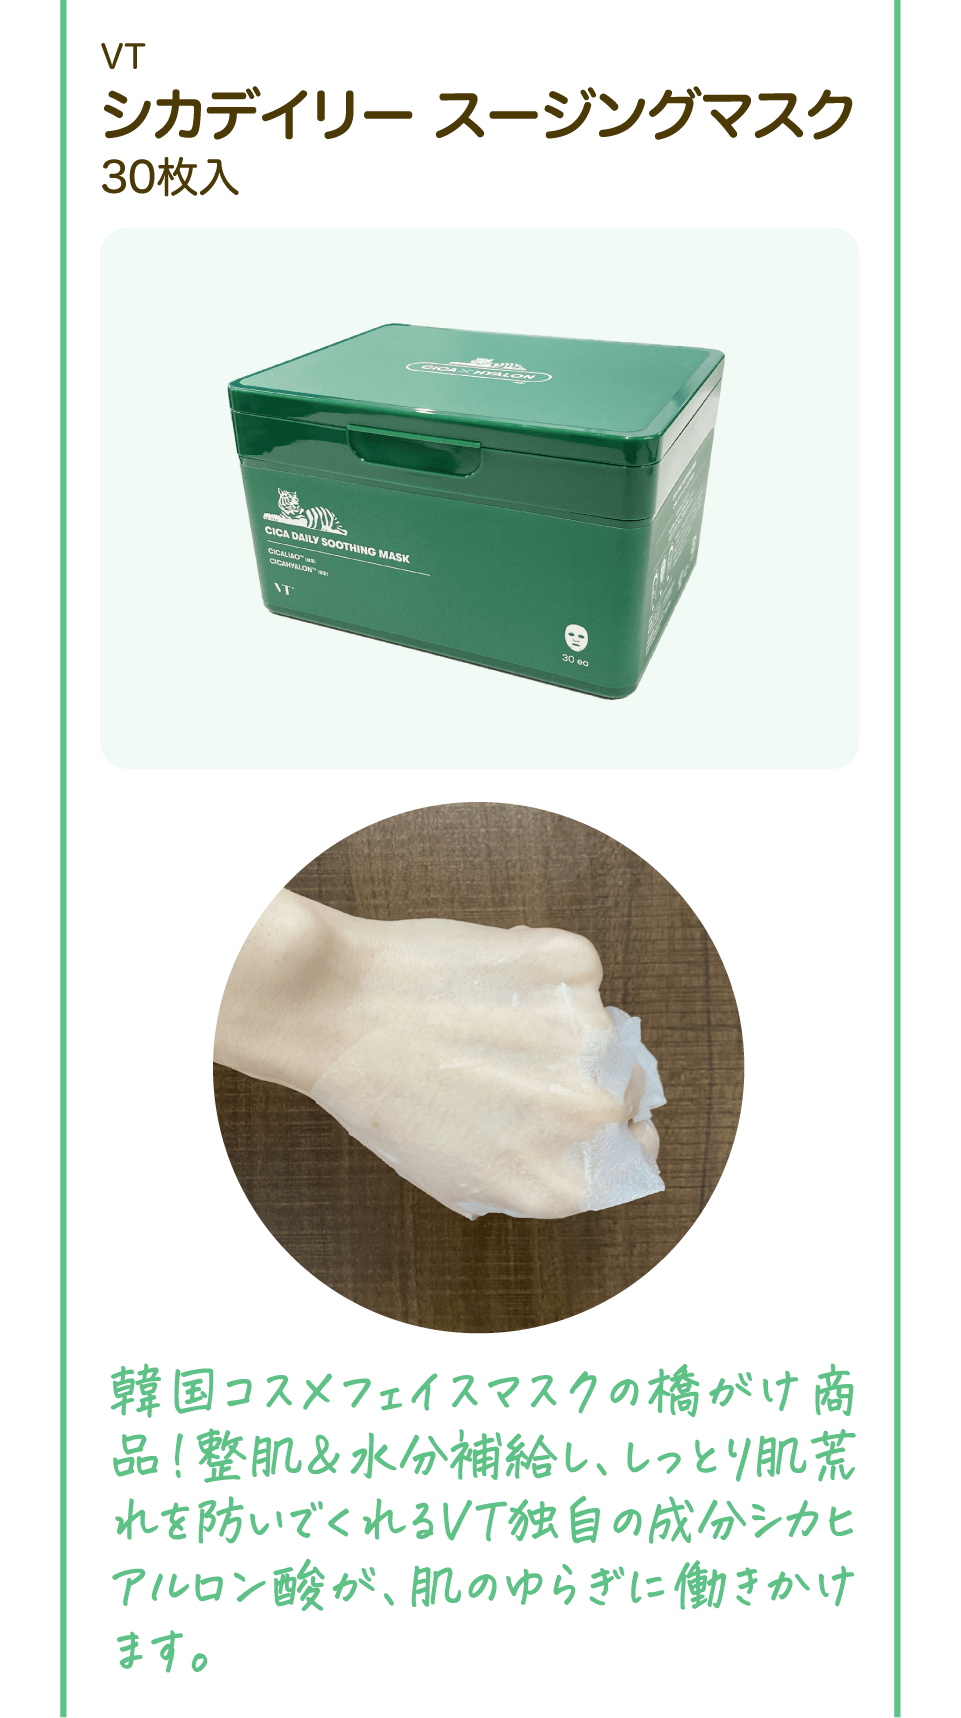 VT シカデイリー スージングマスク 30枚入り 韓国コスメフェイスマスクの橋がけ商品!整肌＆水分補給し、しっとり肌荒れを防いでくれるVT独自の成分シカヒアルロン酸が、肌のゆらぎに働きかけます。